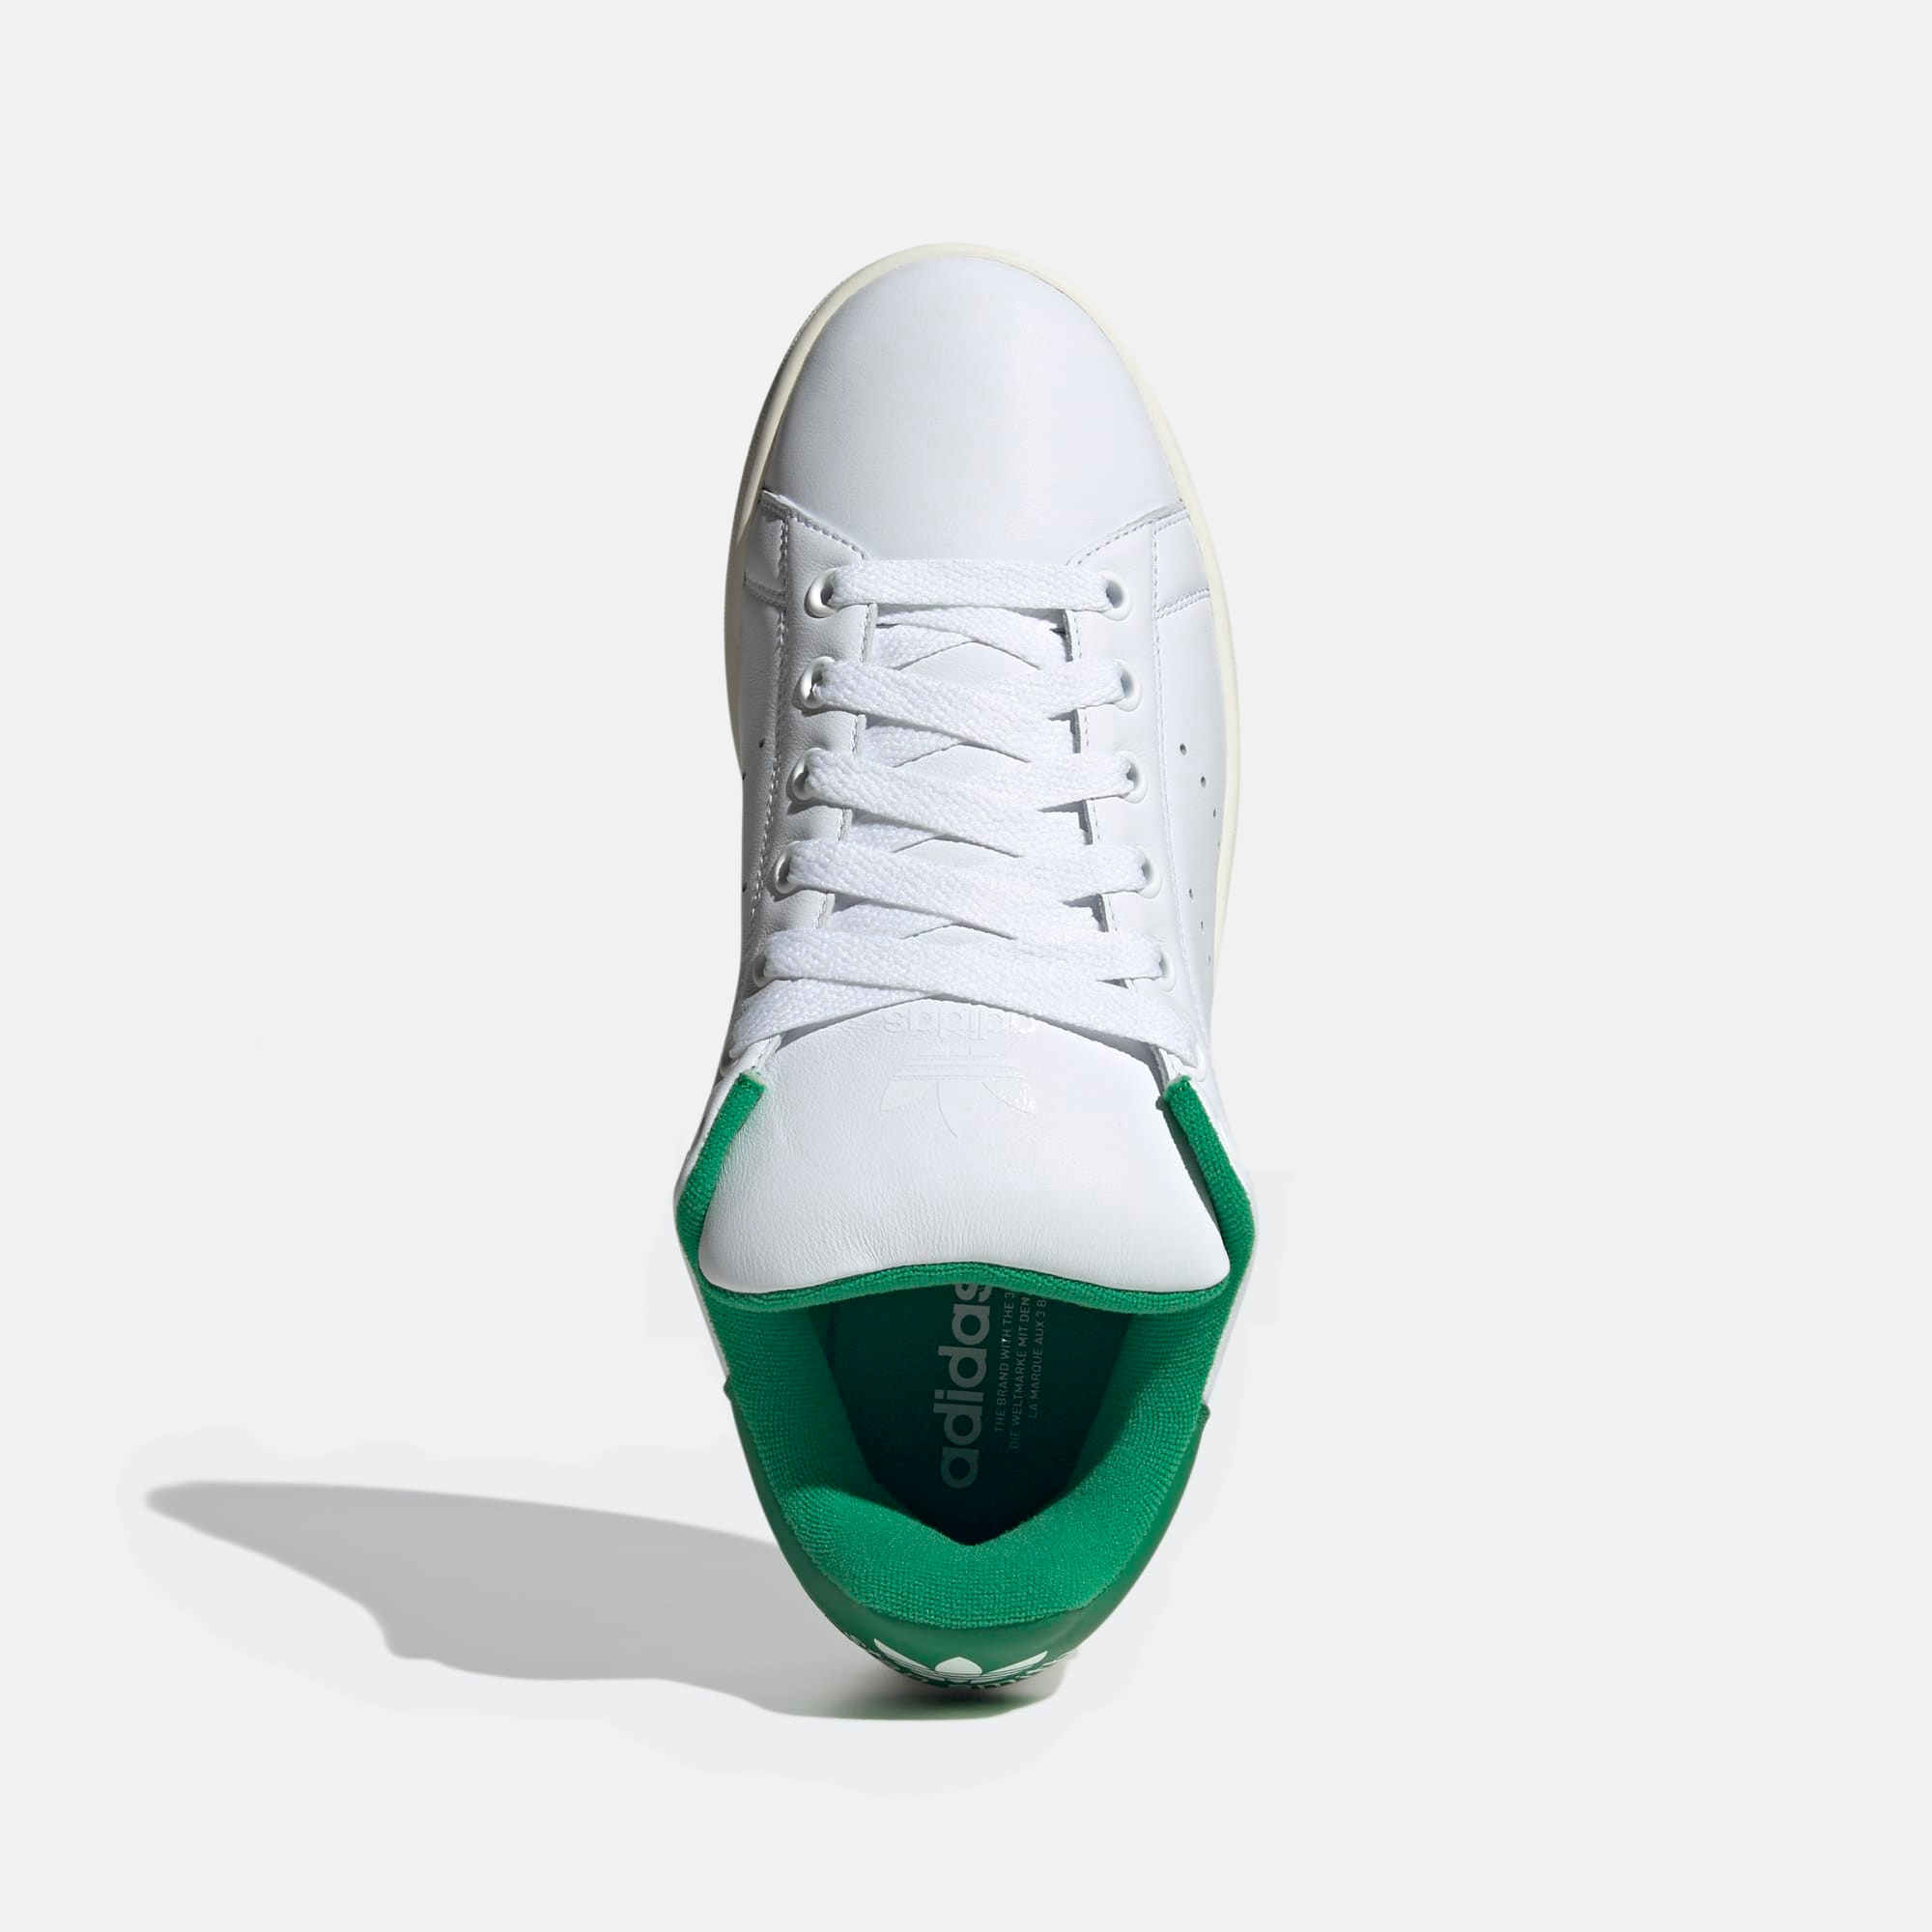 Adidas Stan Smith XLG White Green